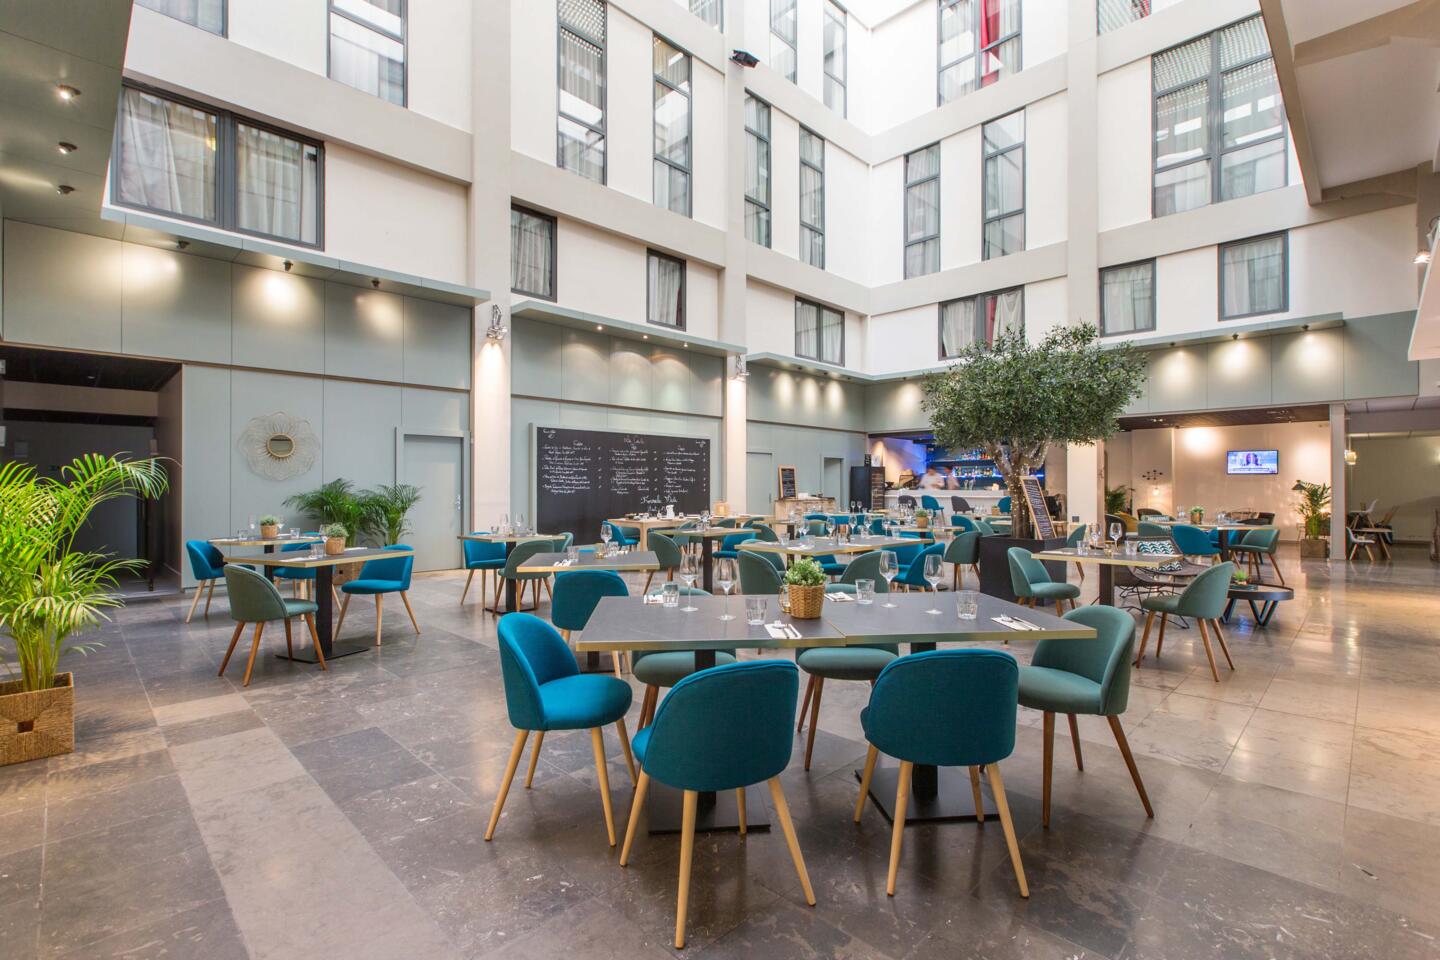 Vista interior del Restaurante Bistrot City Lyon Part-Dieu, decoración contemporánea con sillas de tela azul pato, mesas de madera y plantas verdes, un ambiente luminoso y acogedor.